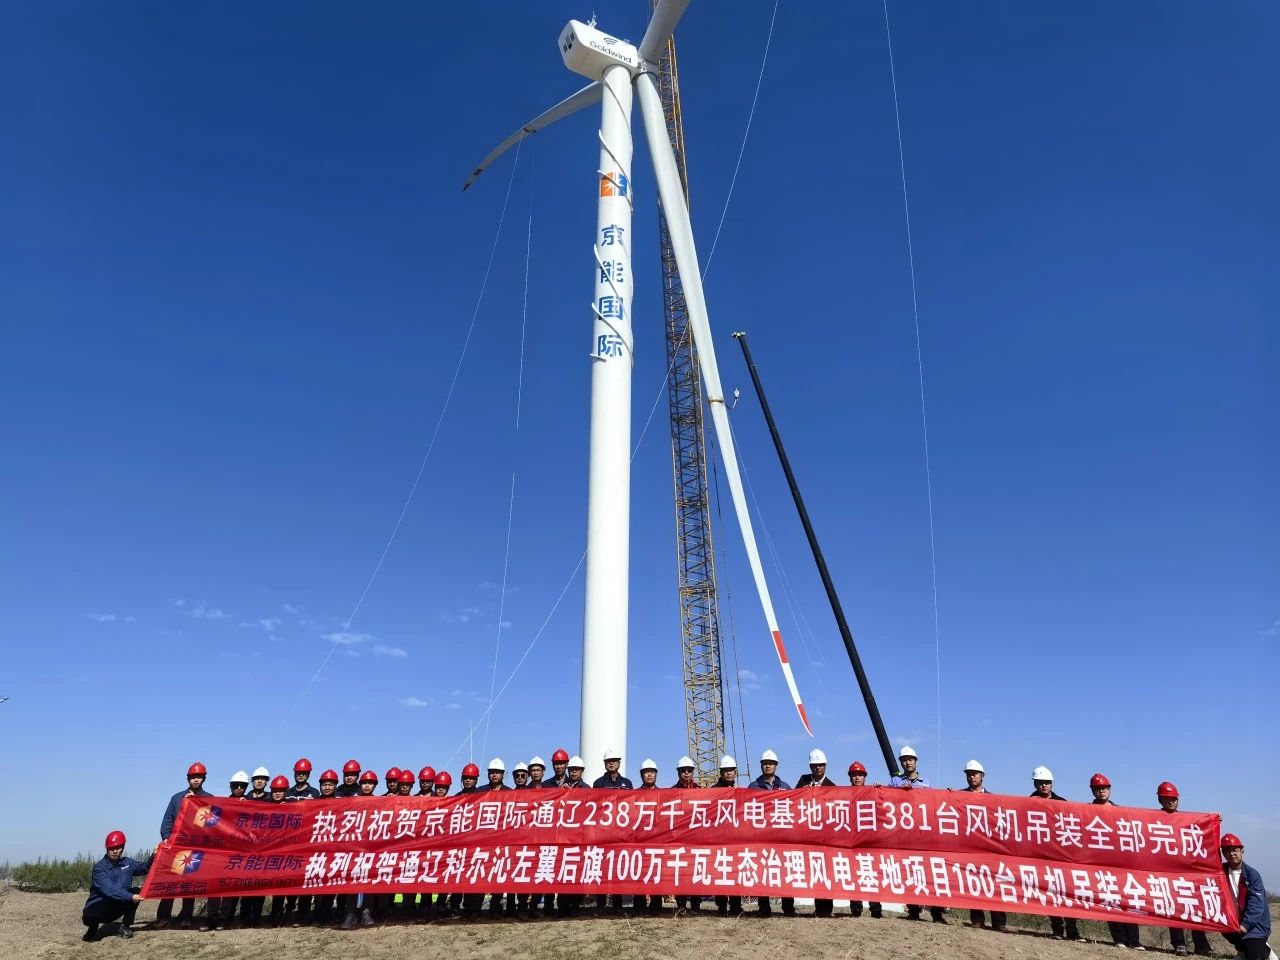 京能国际内蒙古通辽2.38GW风电基地项目381<em>台风</em>力发电机组吊装全部完成